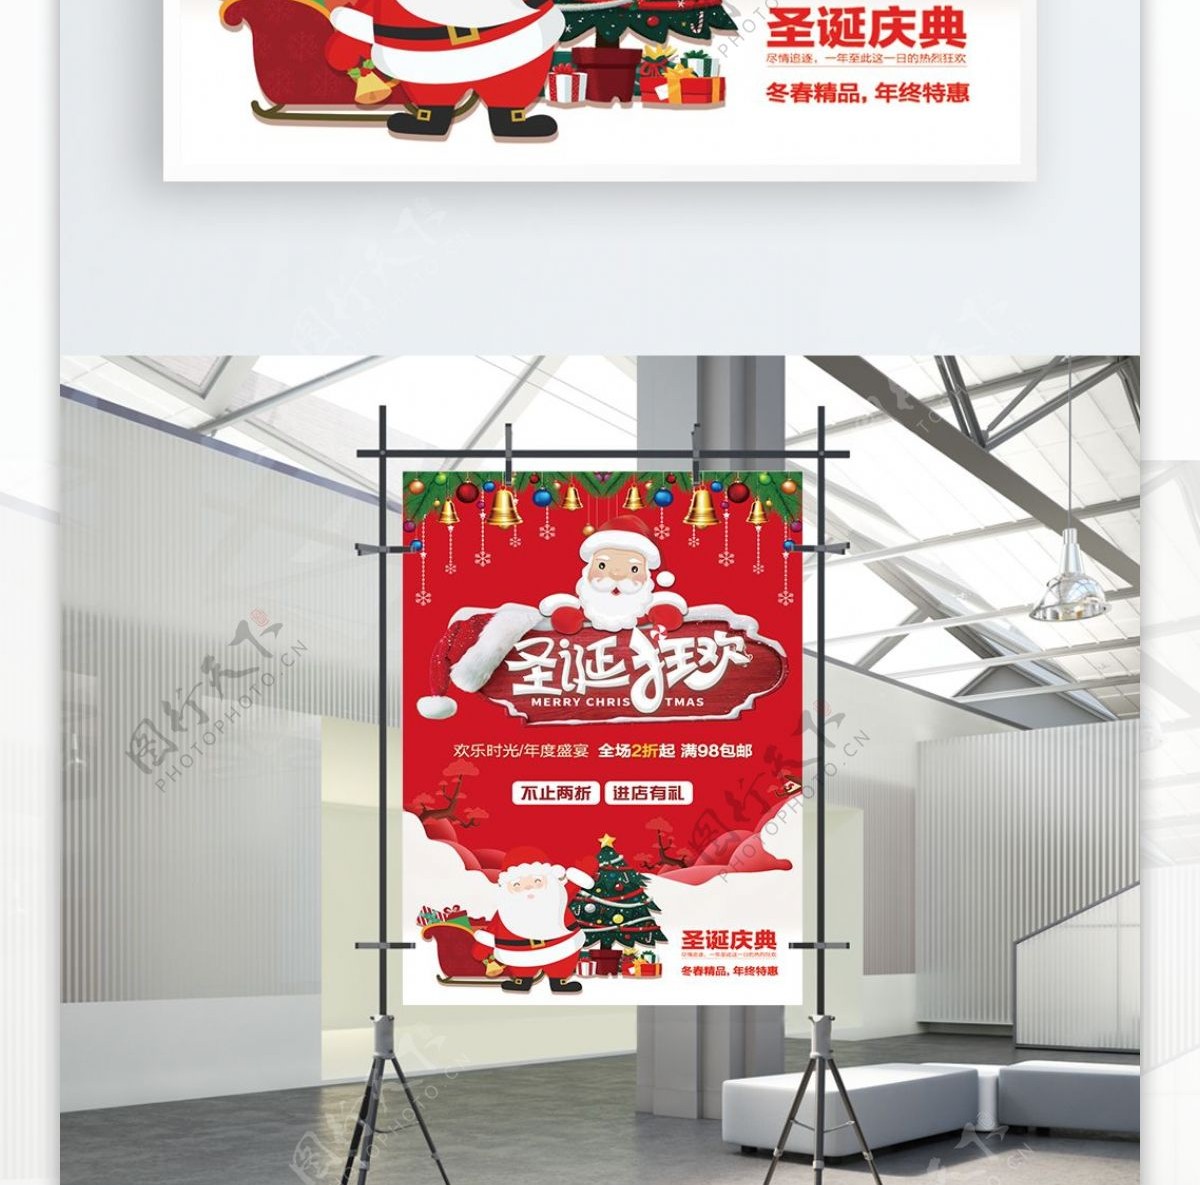 2018圣诞红色喷绘海报设计PSD模板